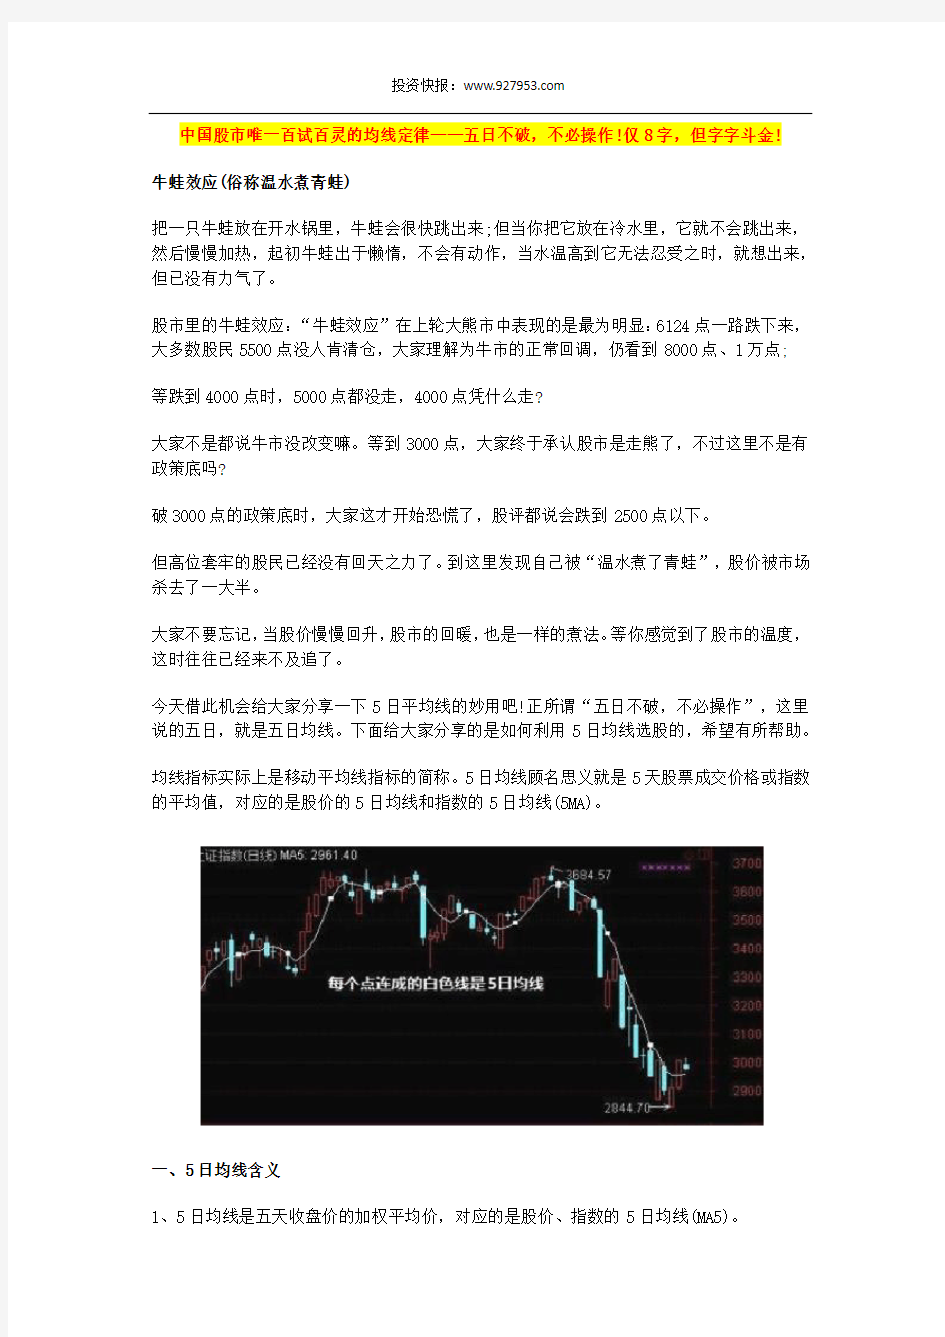 中国股市唯一百试百灵的均线定律——五日不破,不必操作!仅8字,但字字斗金!